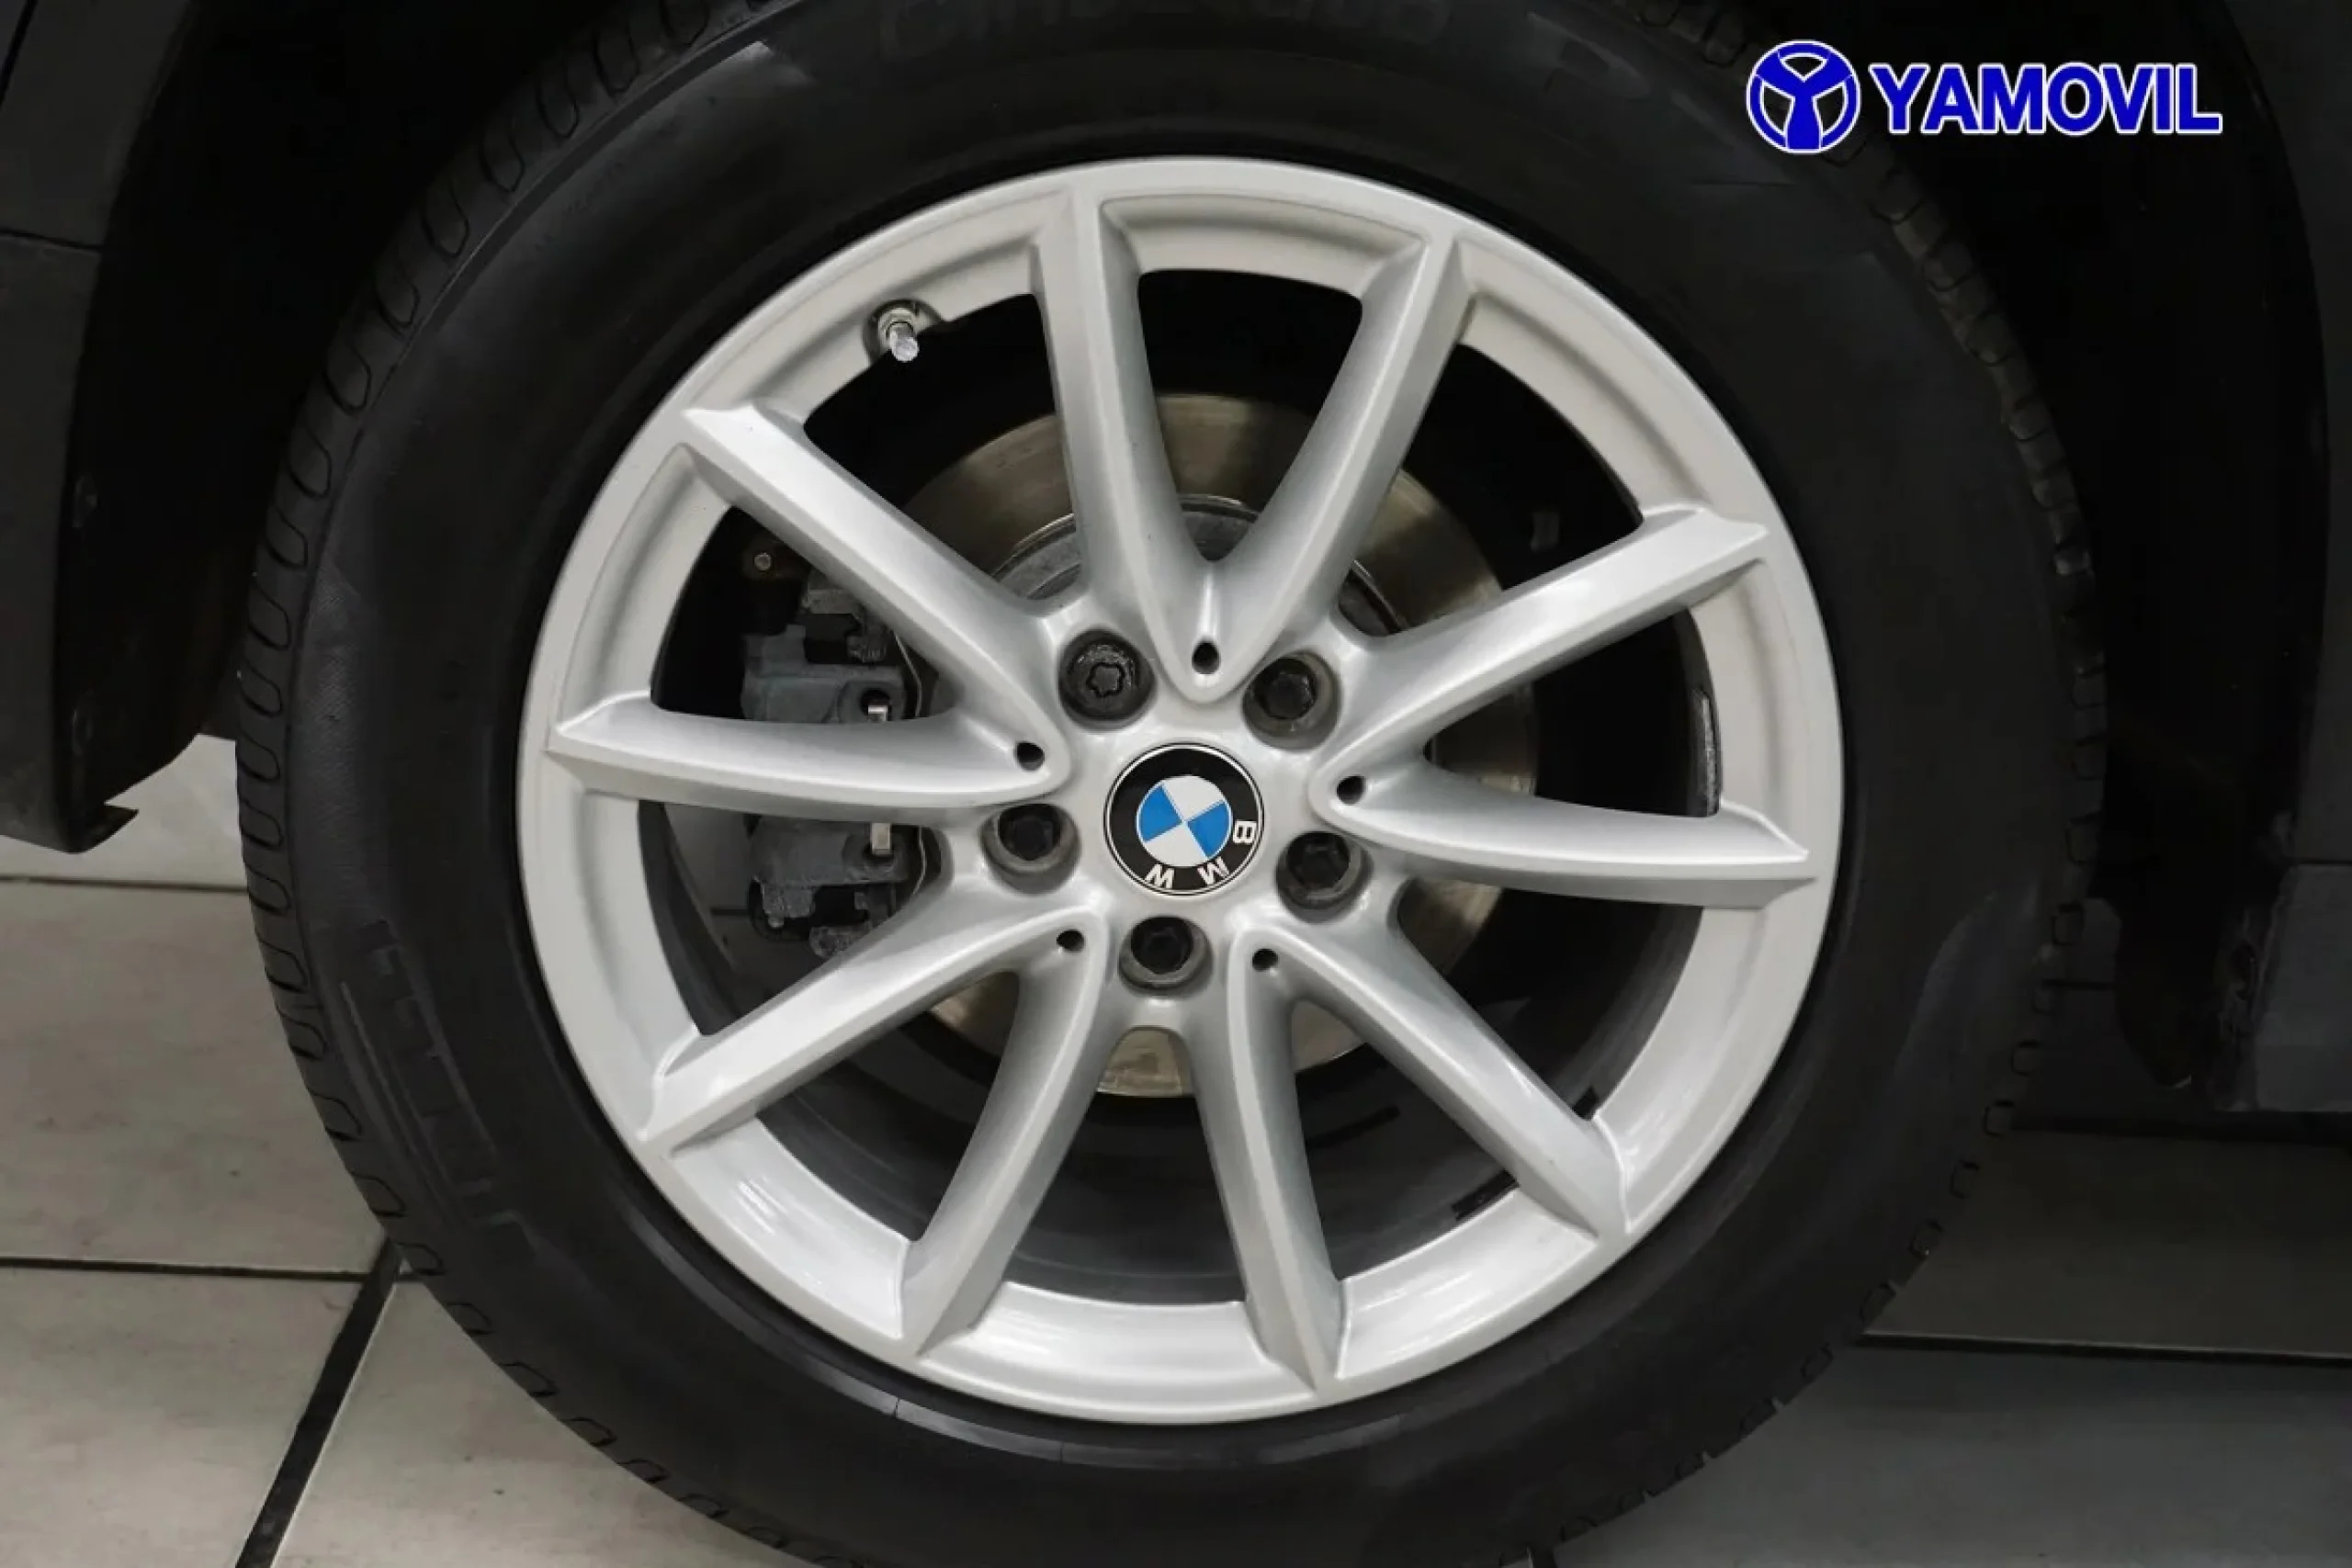 BMW X1 sDrive18d 110 kW (150 CV) - Foto 10